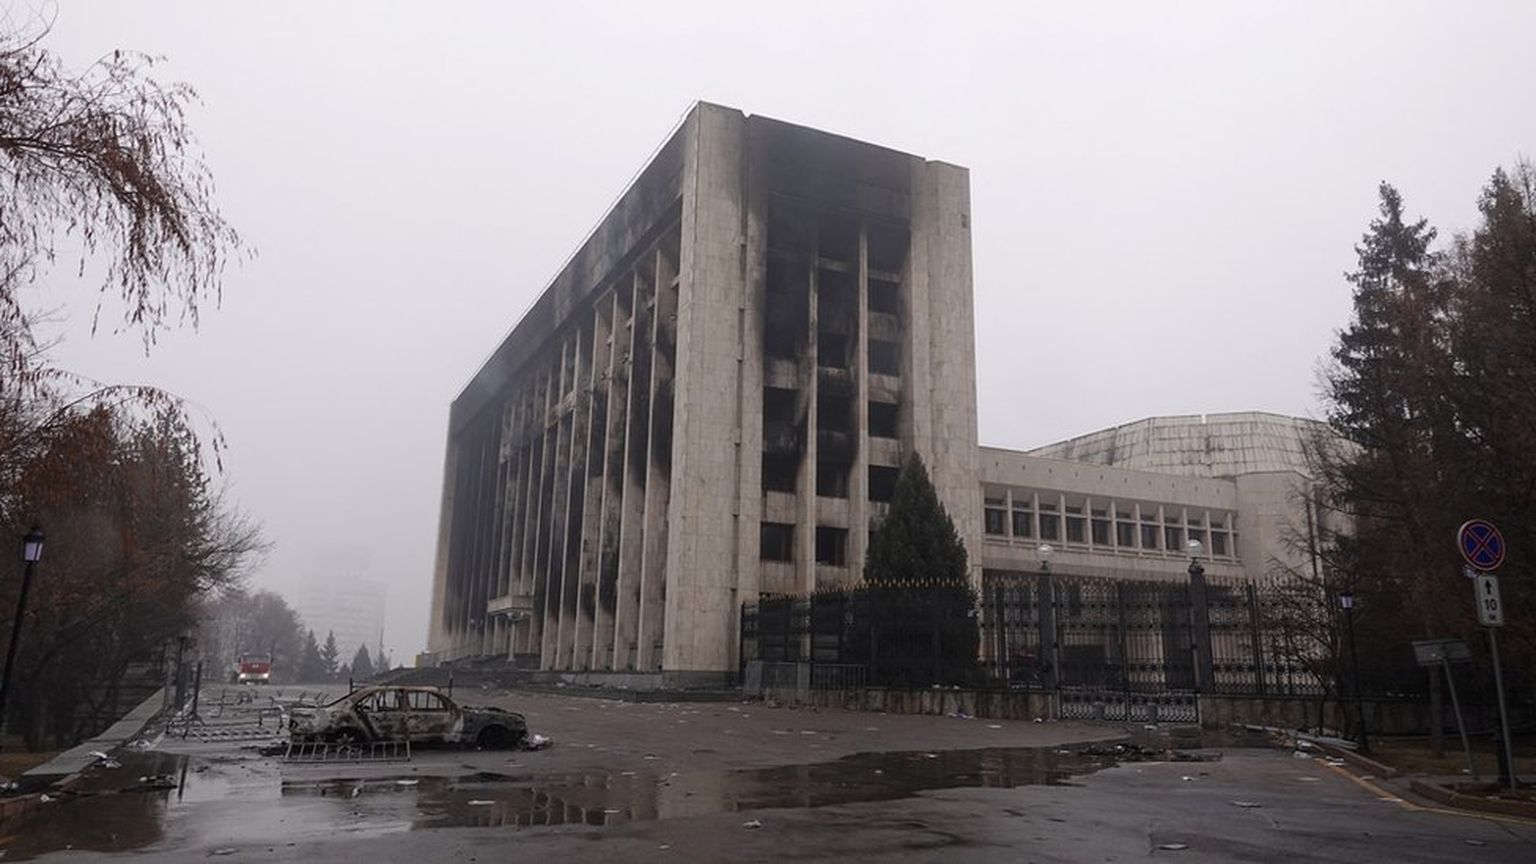 Так выглядит здание акимата (городской администрации) Алматы